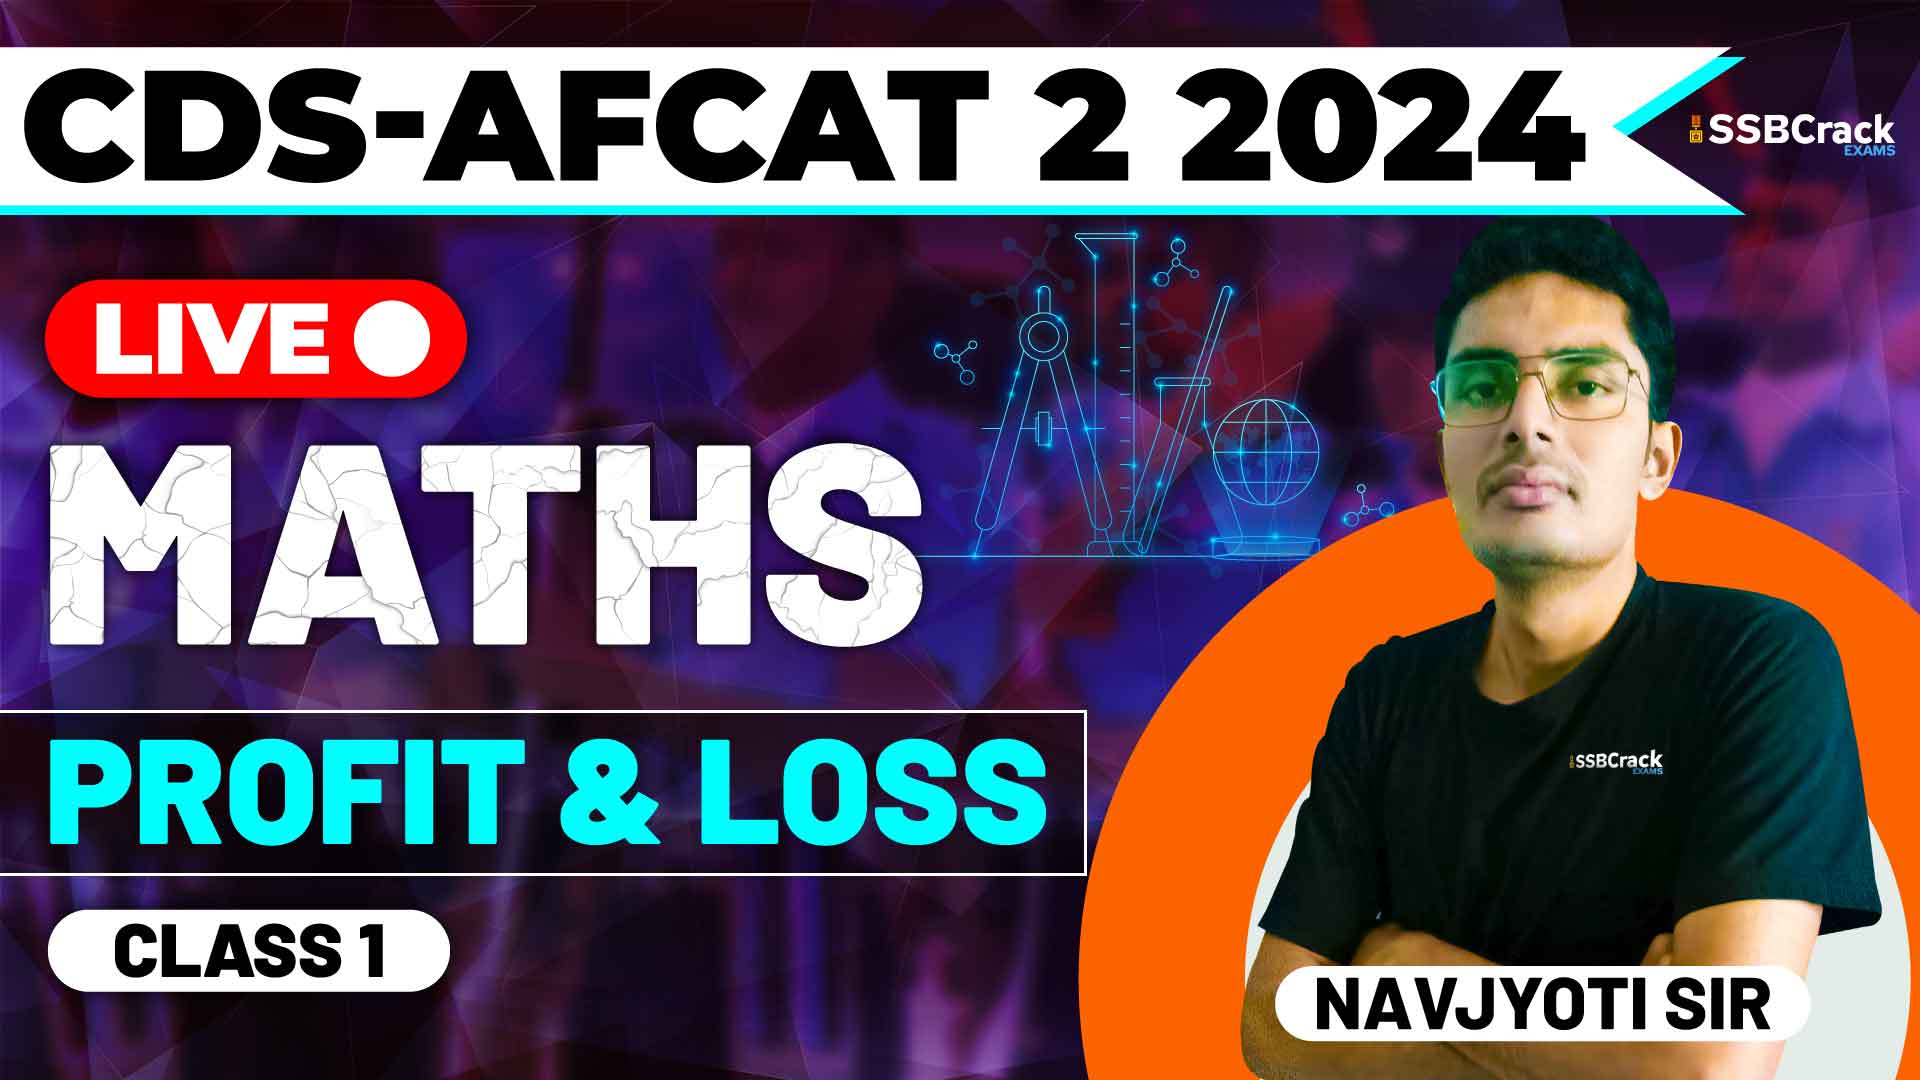 CDS AFCAT 2 2024 MATHS Profit Loss Class 1